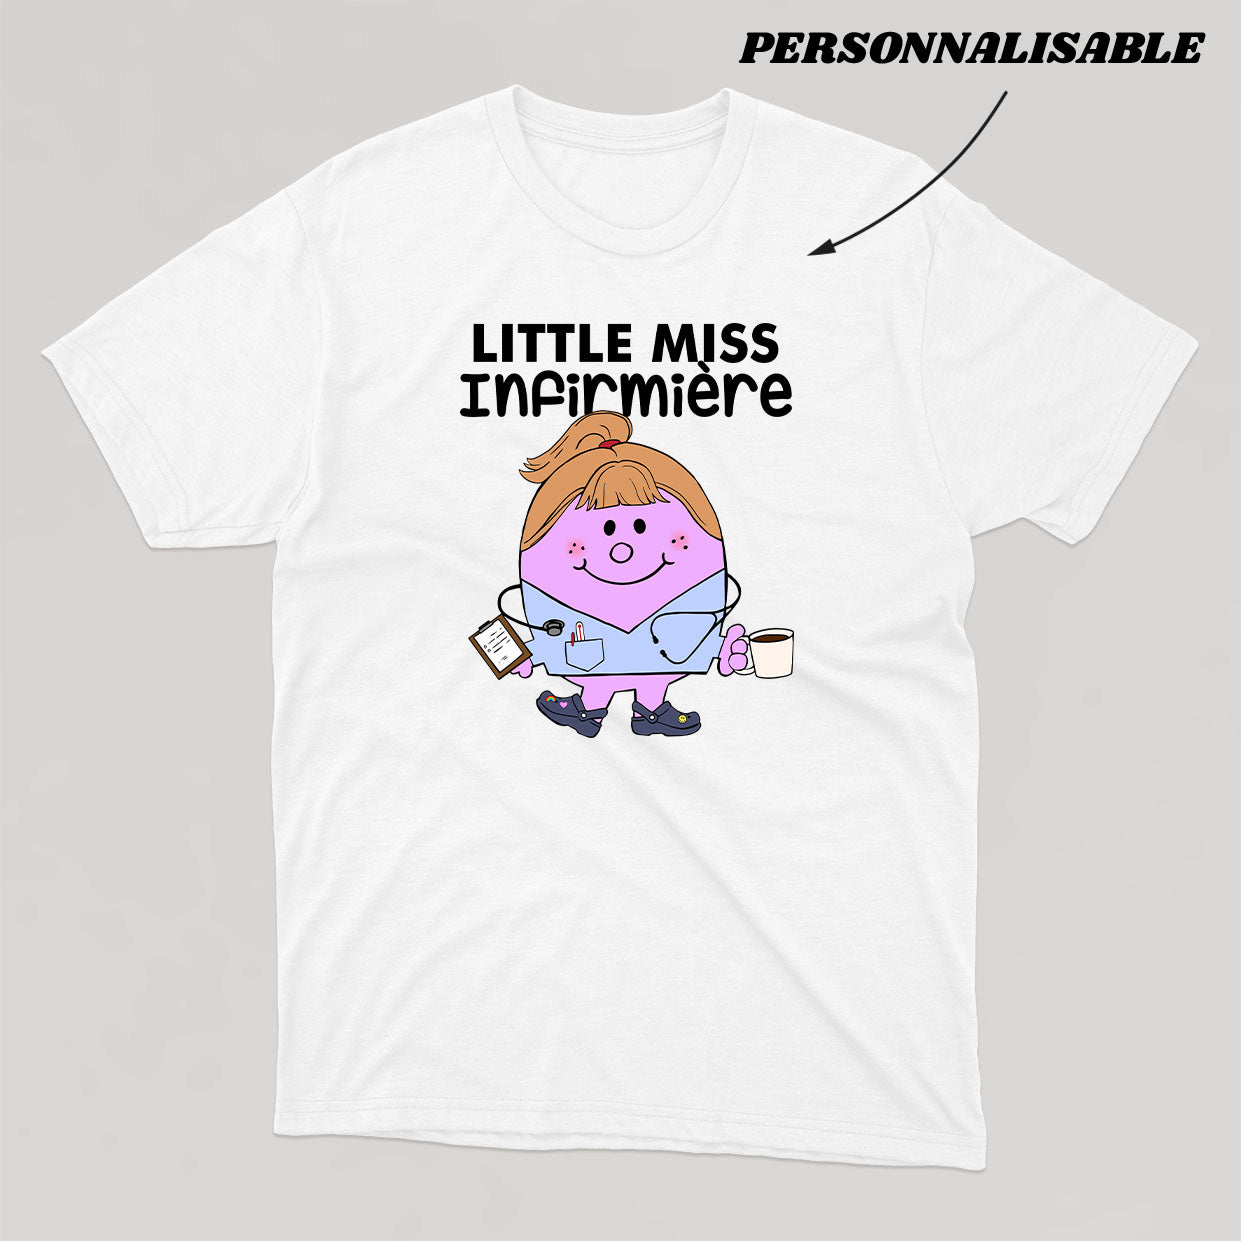 LITTLE MISS *PERSONNEL DE LA SANTÉ* t-shirt unisexe - tamelo boutique